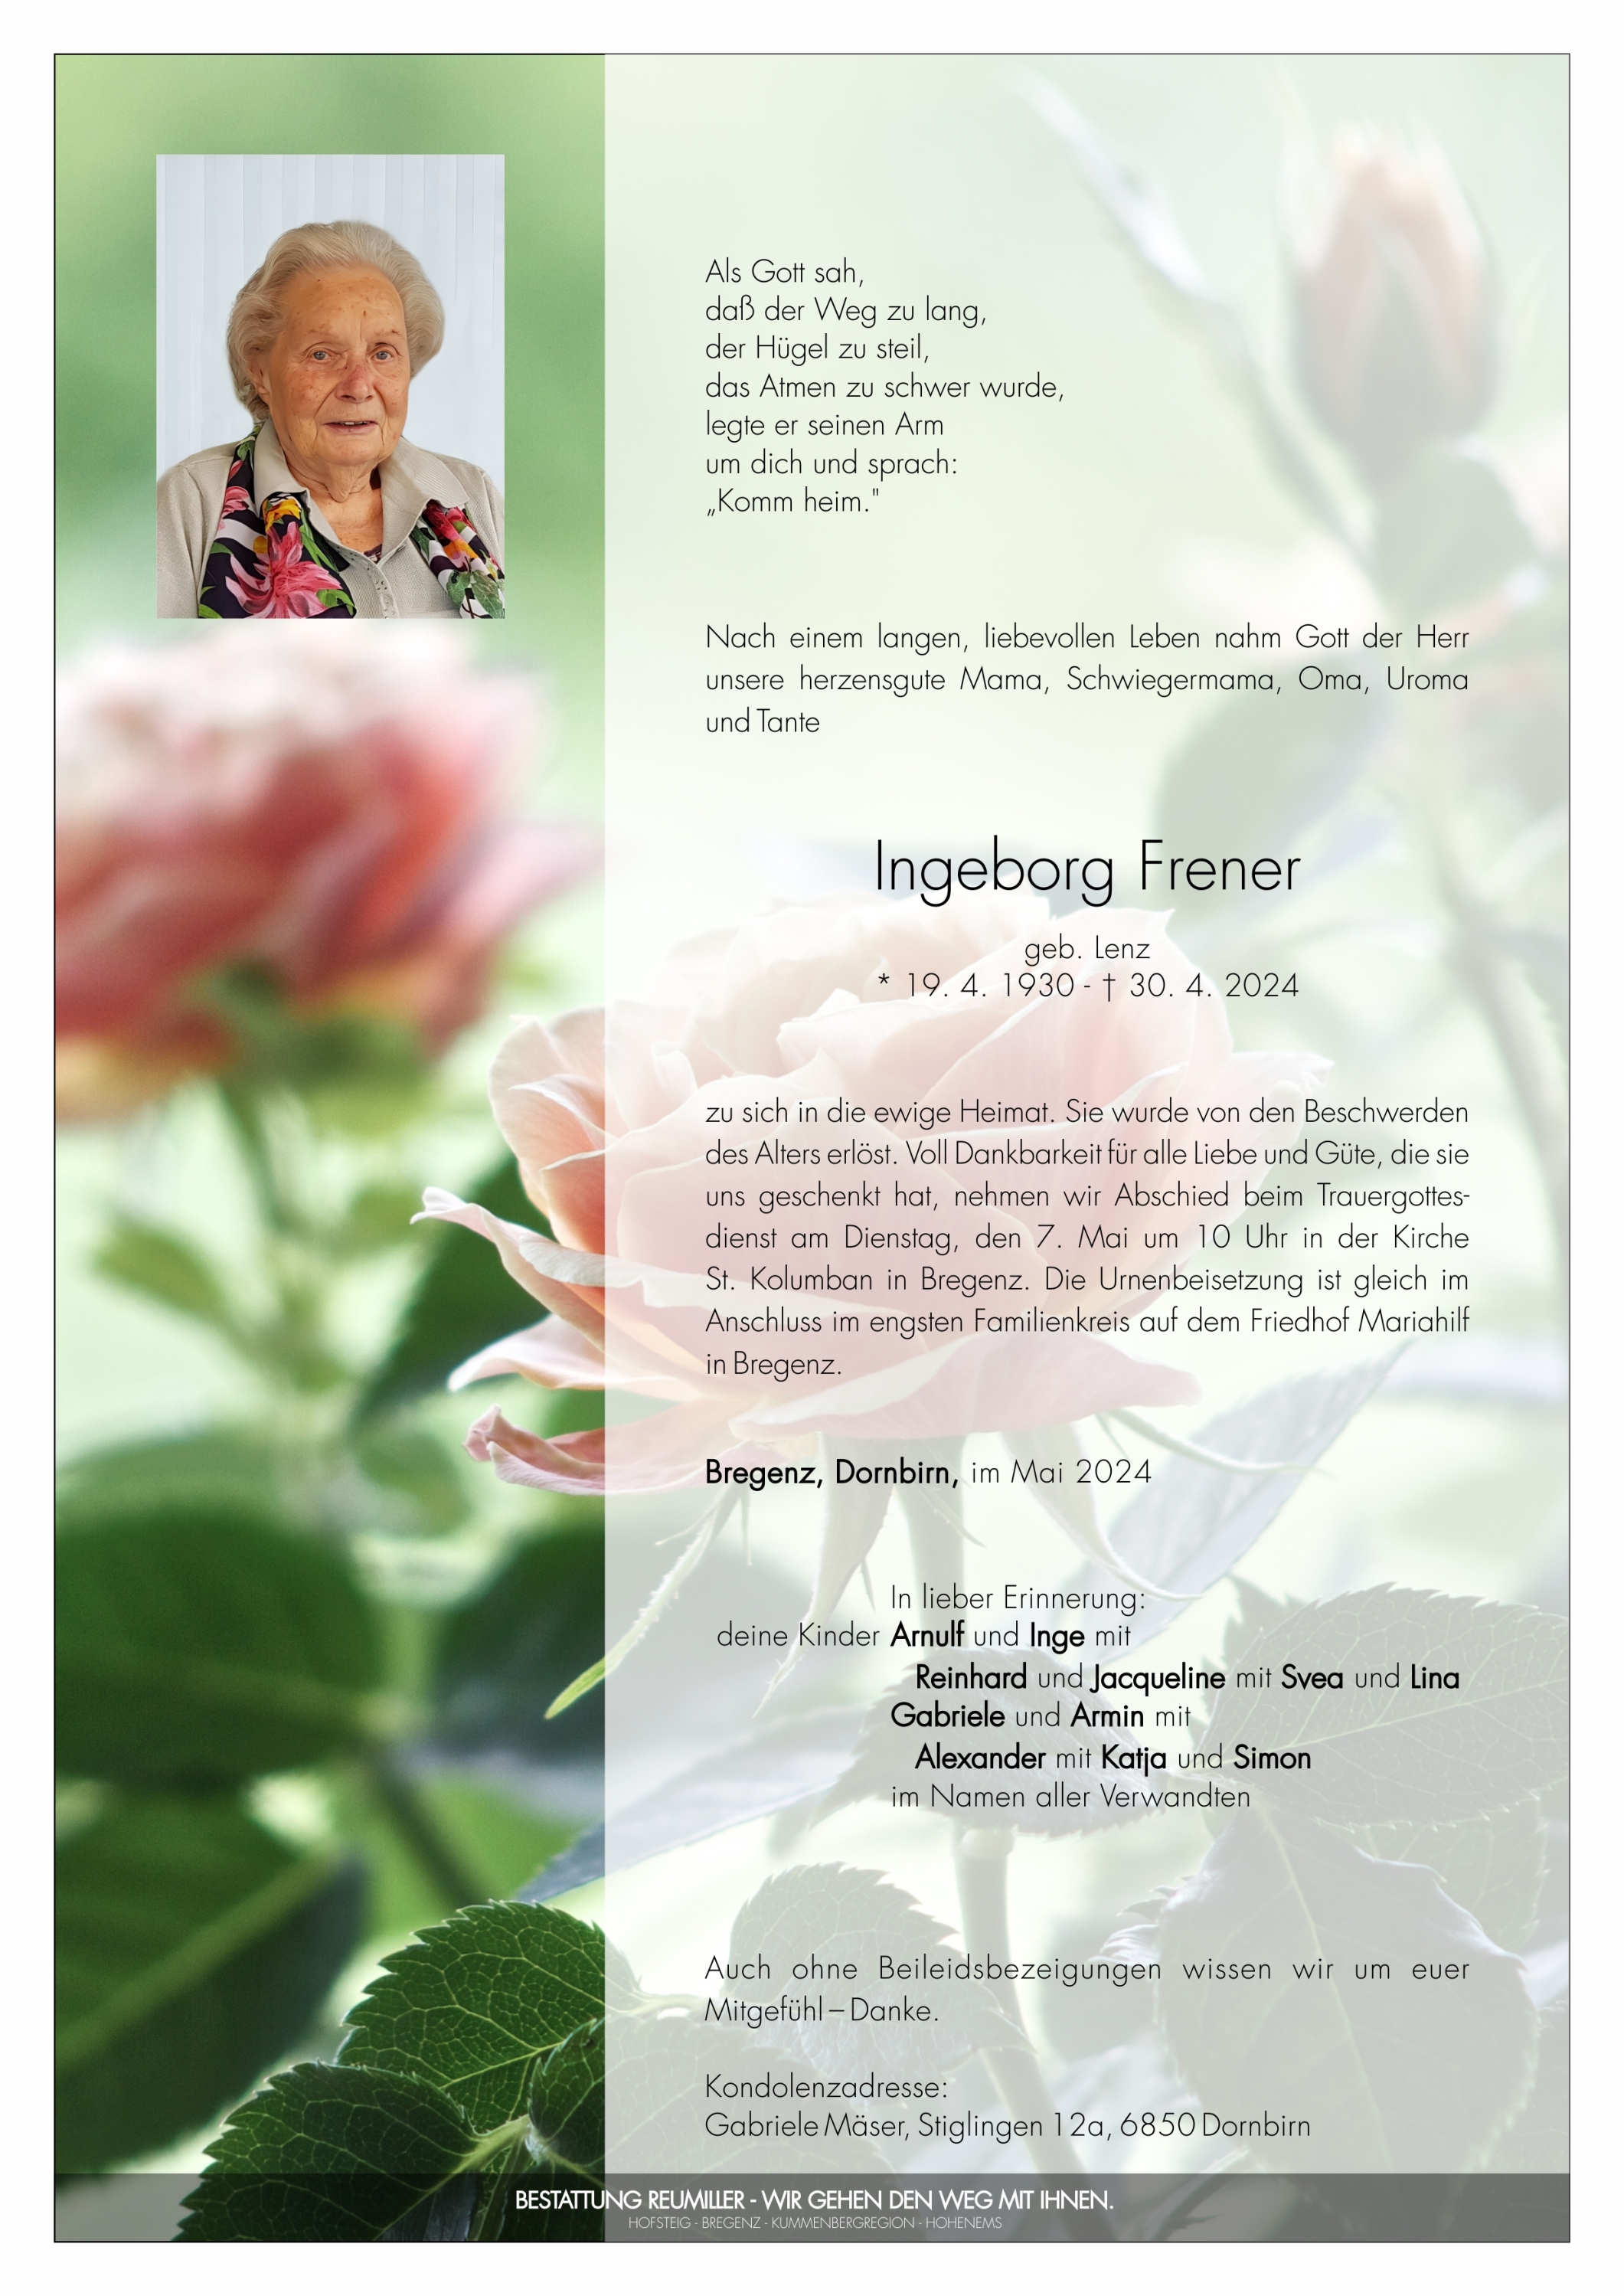 Ingeborg Frener